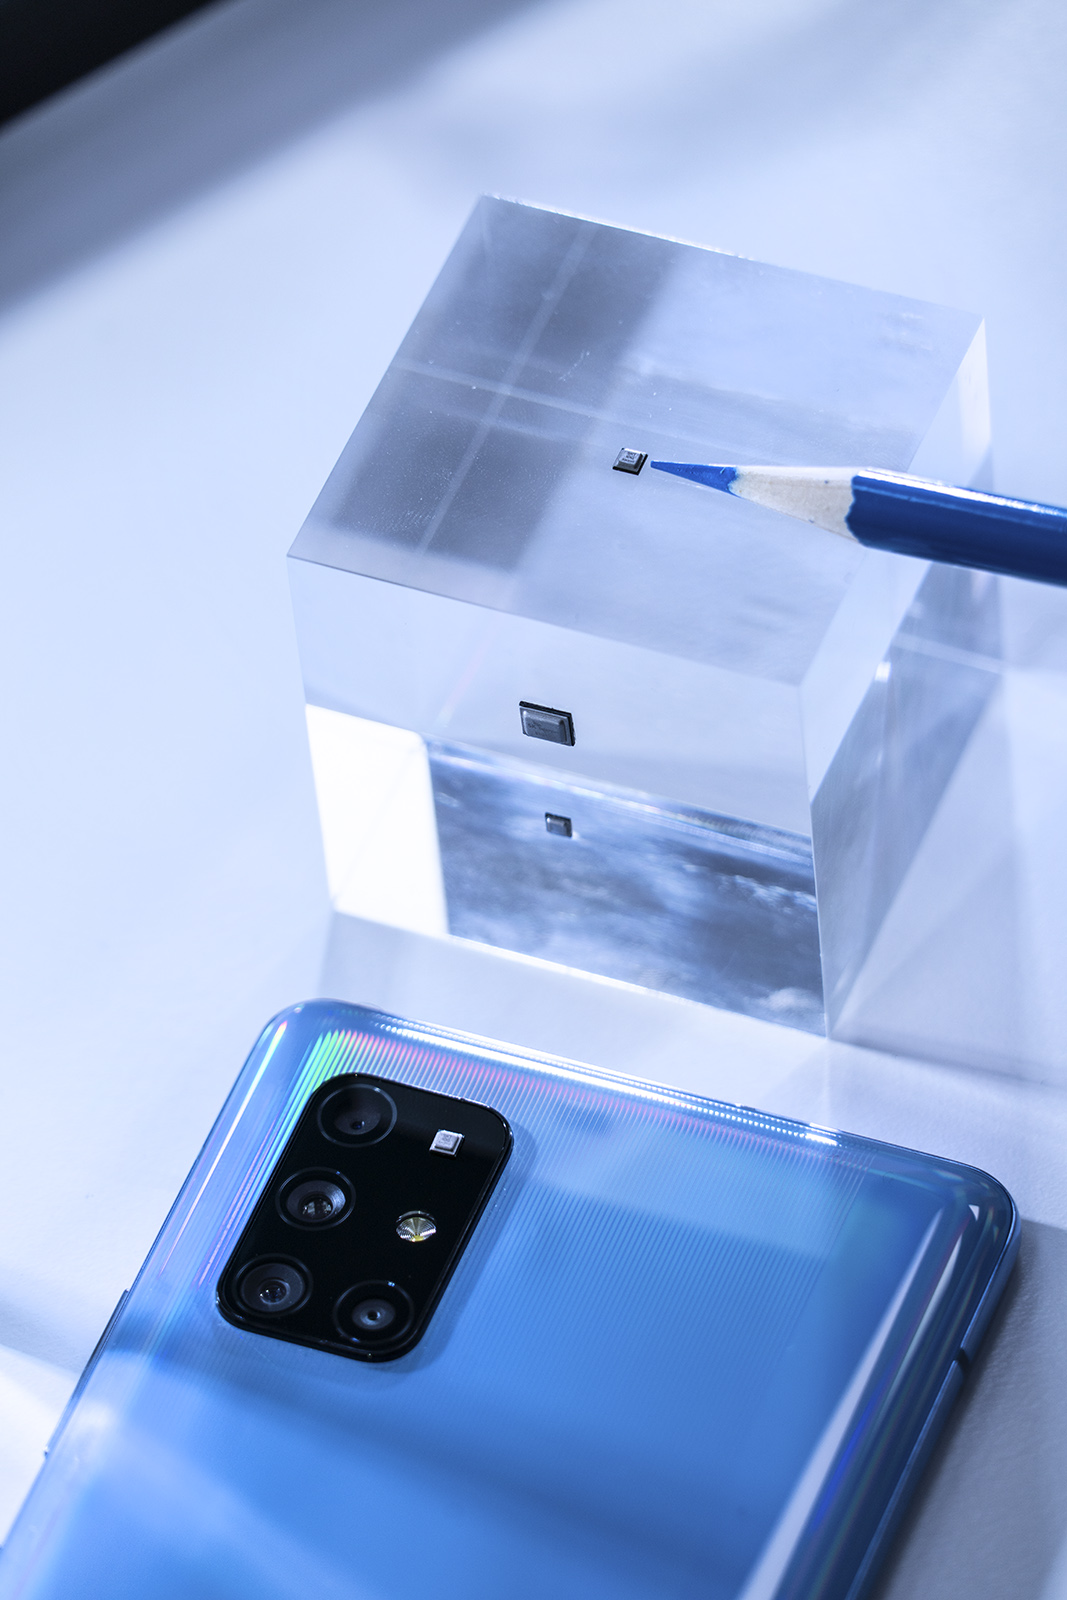 quantum chip phone next to pencil